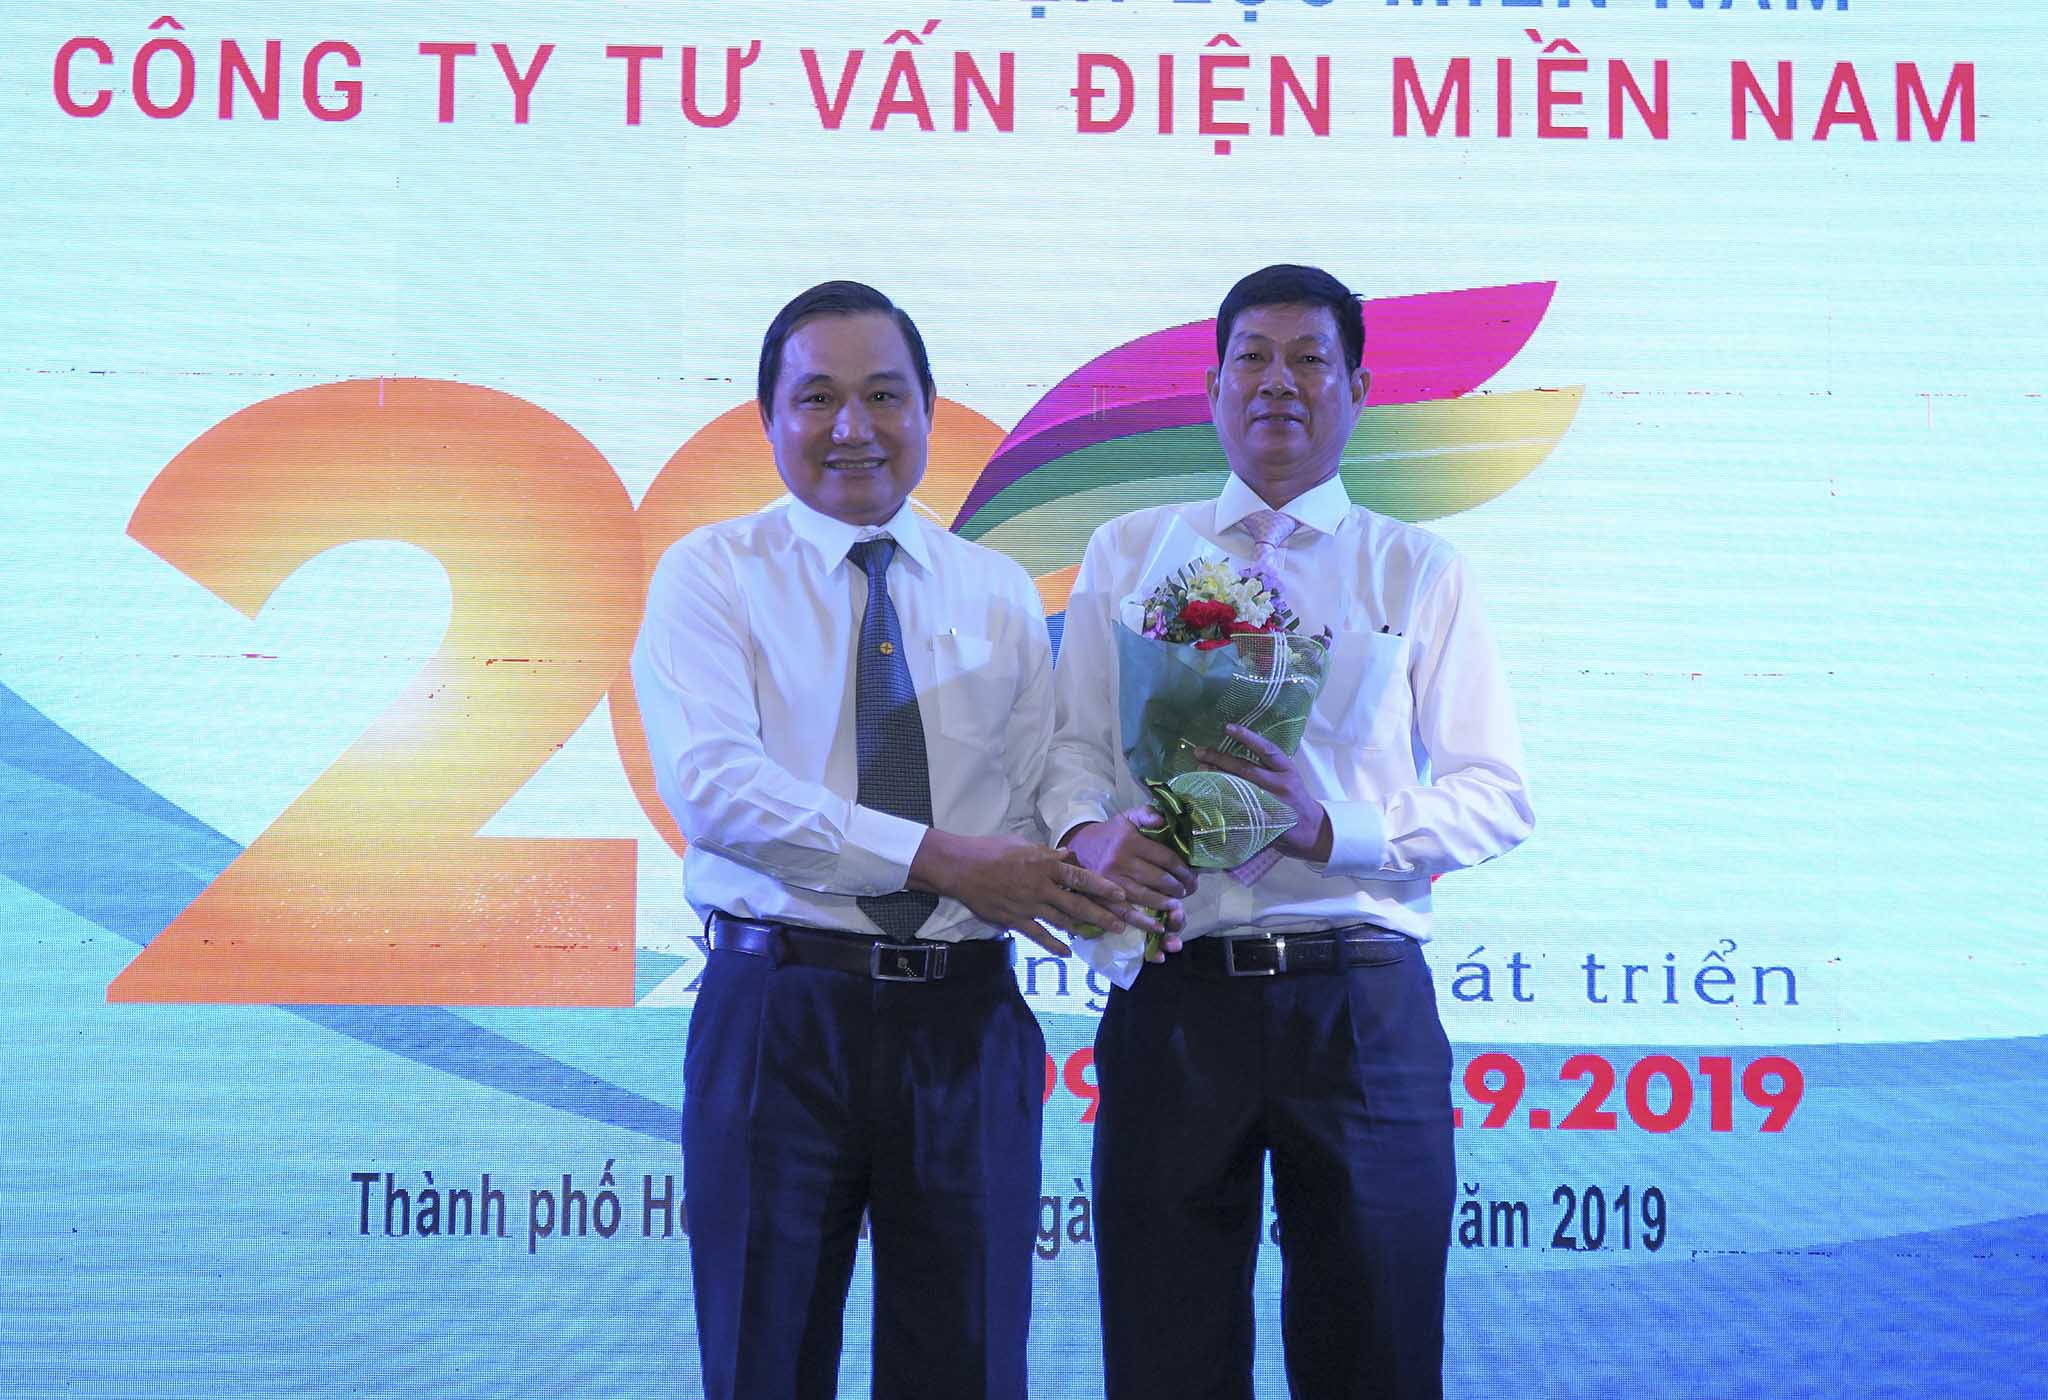 Ông Nguyễn Văn Hợp - Chủ tịch Hội đồng thành viên EVN SPC chúc mừng Công ty Tư vấn điện miền Nam nhân dịp 20 năm thành lập 